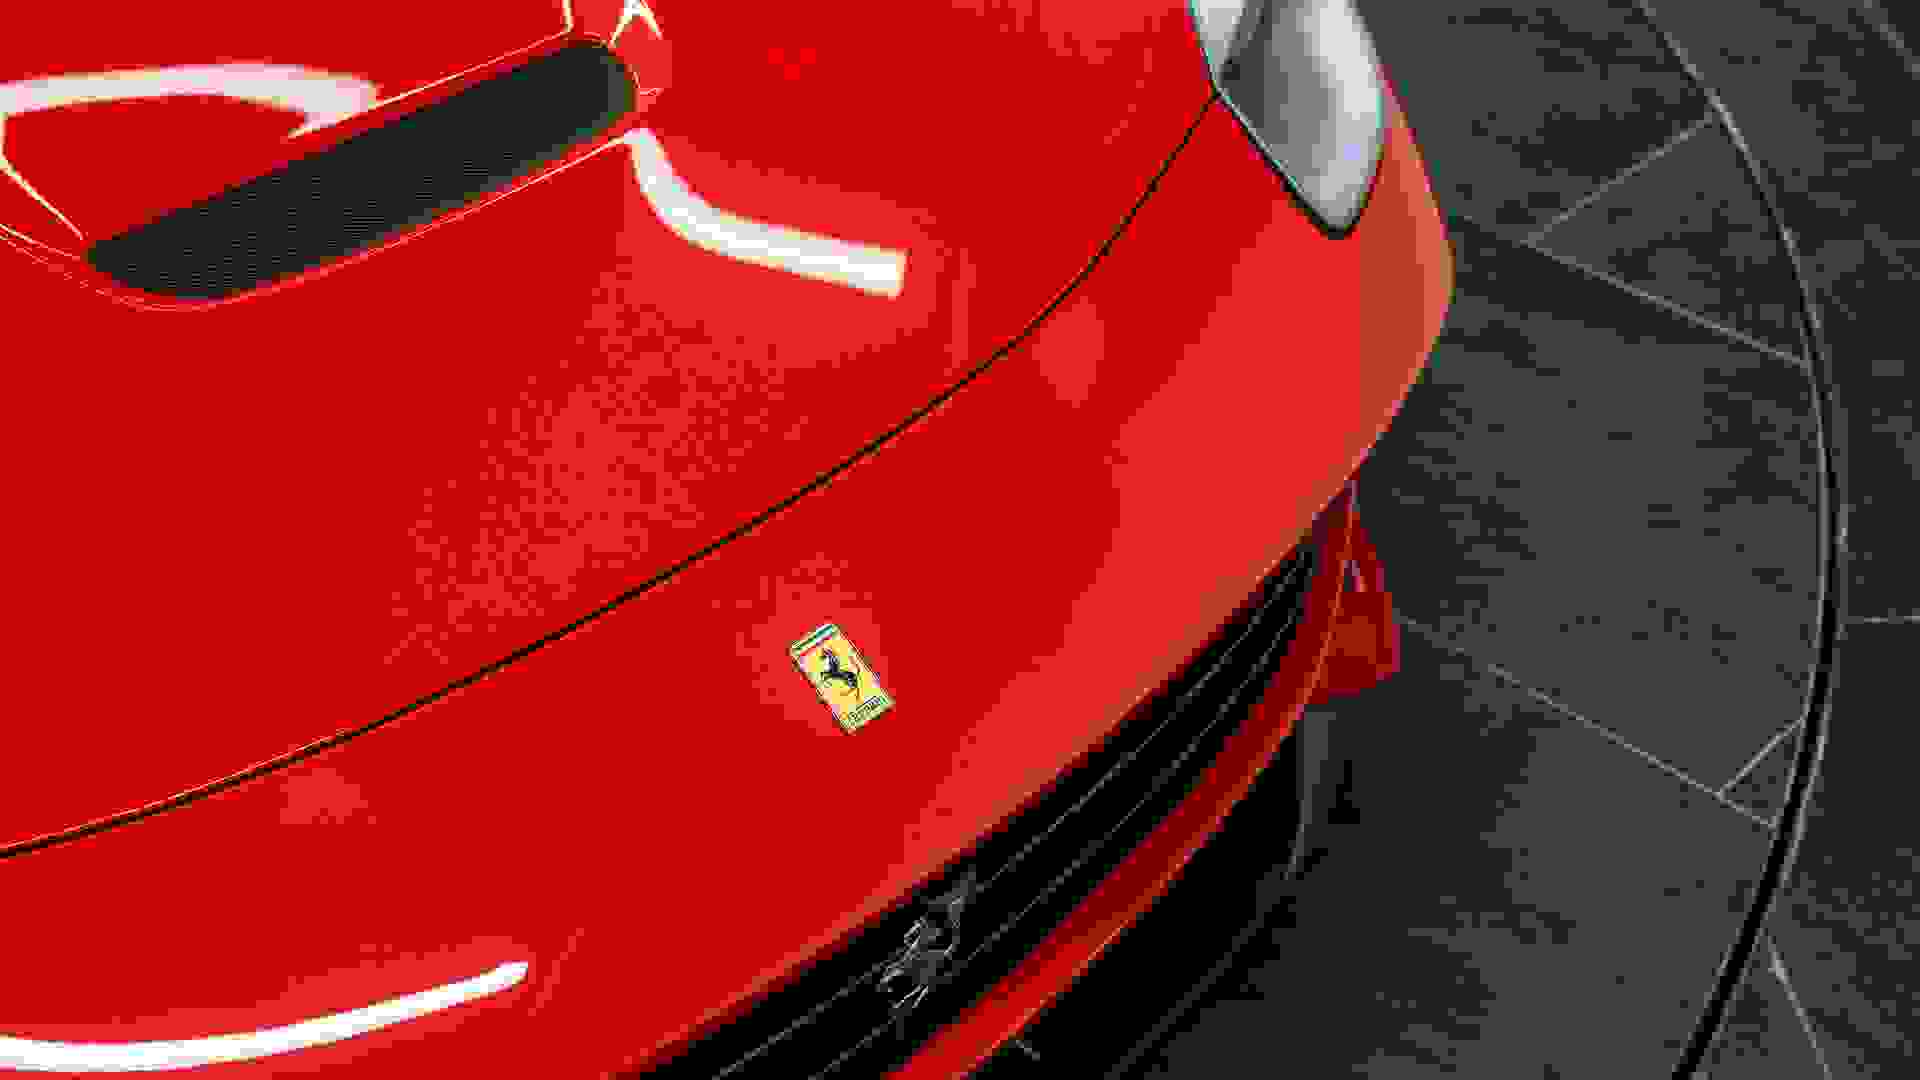 Ferrari F12 Photo 6a2fbcbd-a07a-43b8-9d38-9c9545edc045.jpg